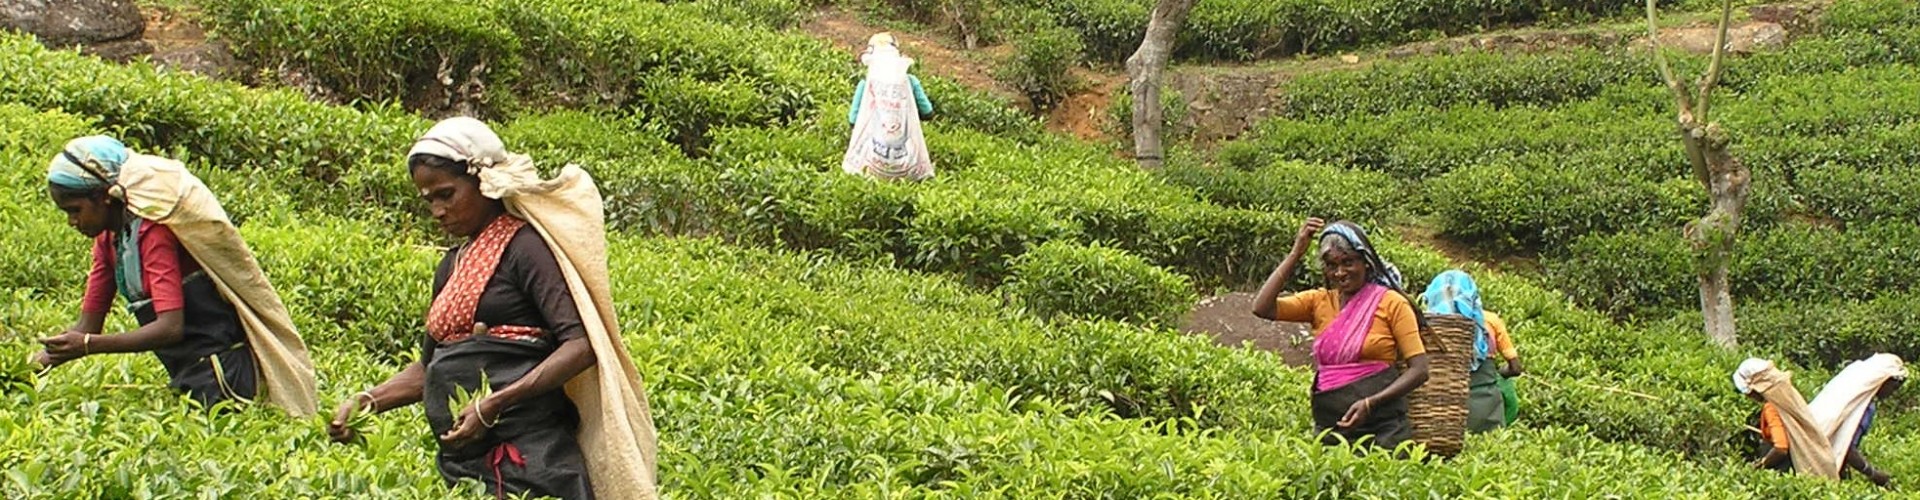 Tea pickers, Sri Lanka